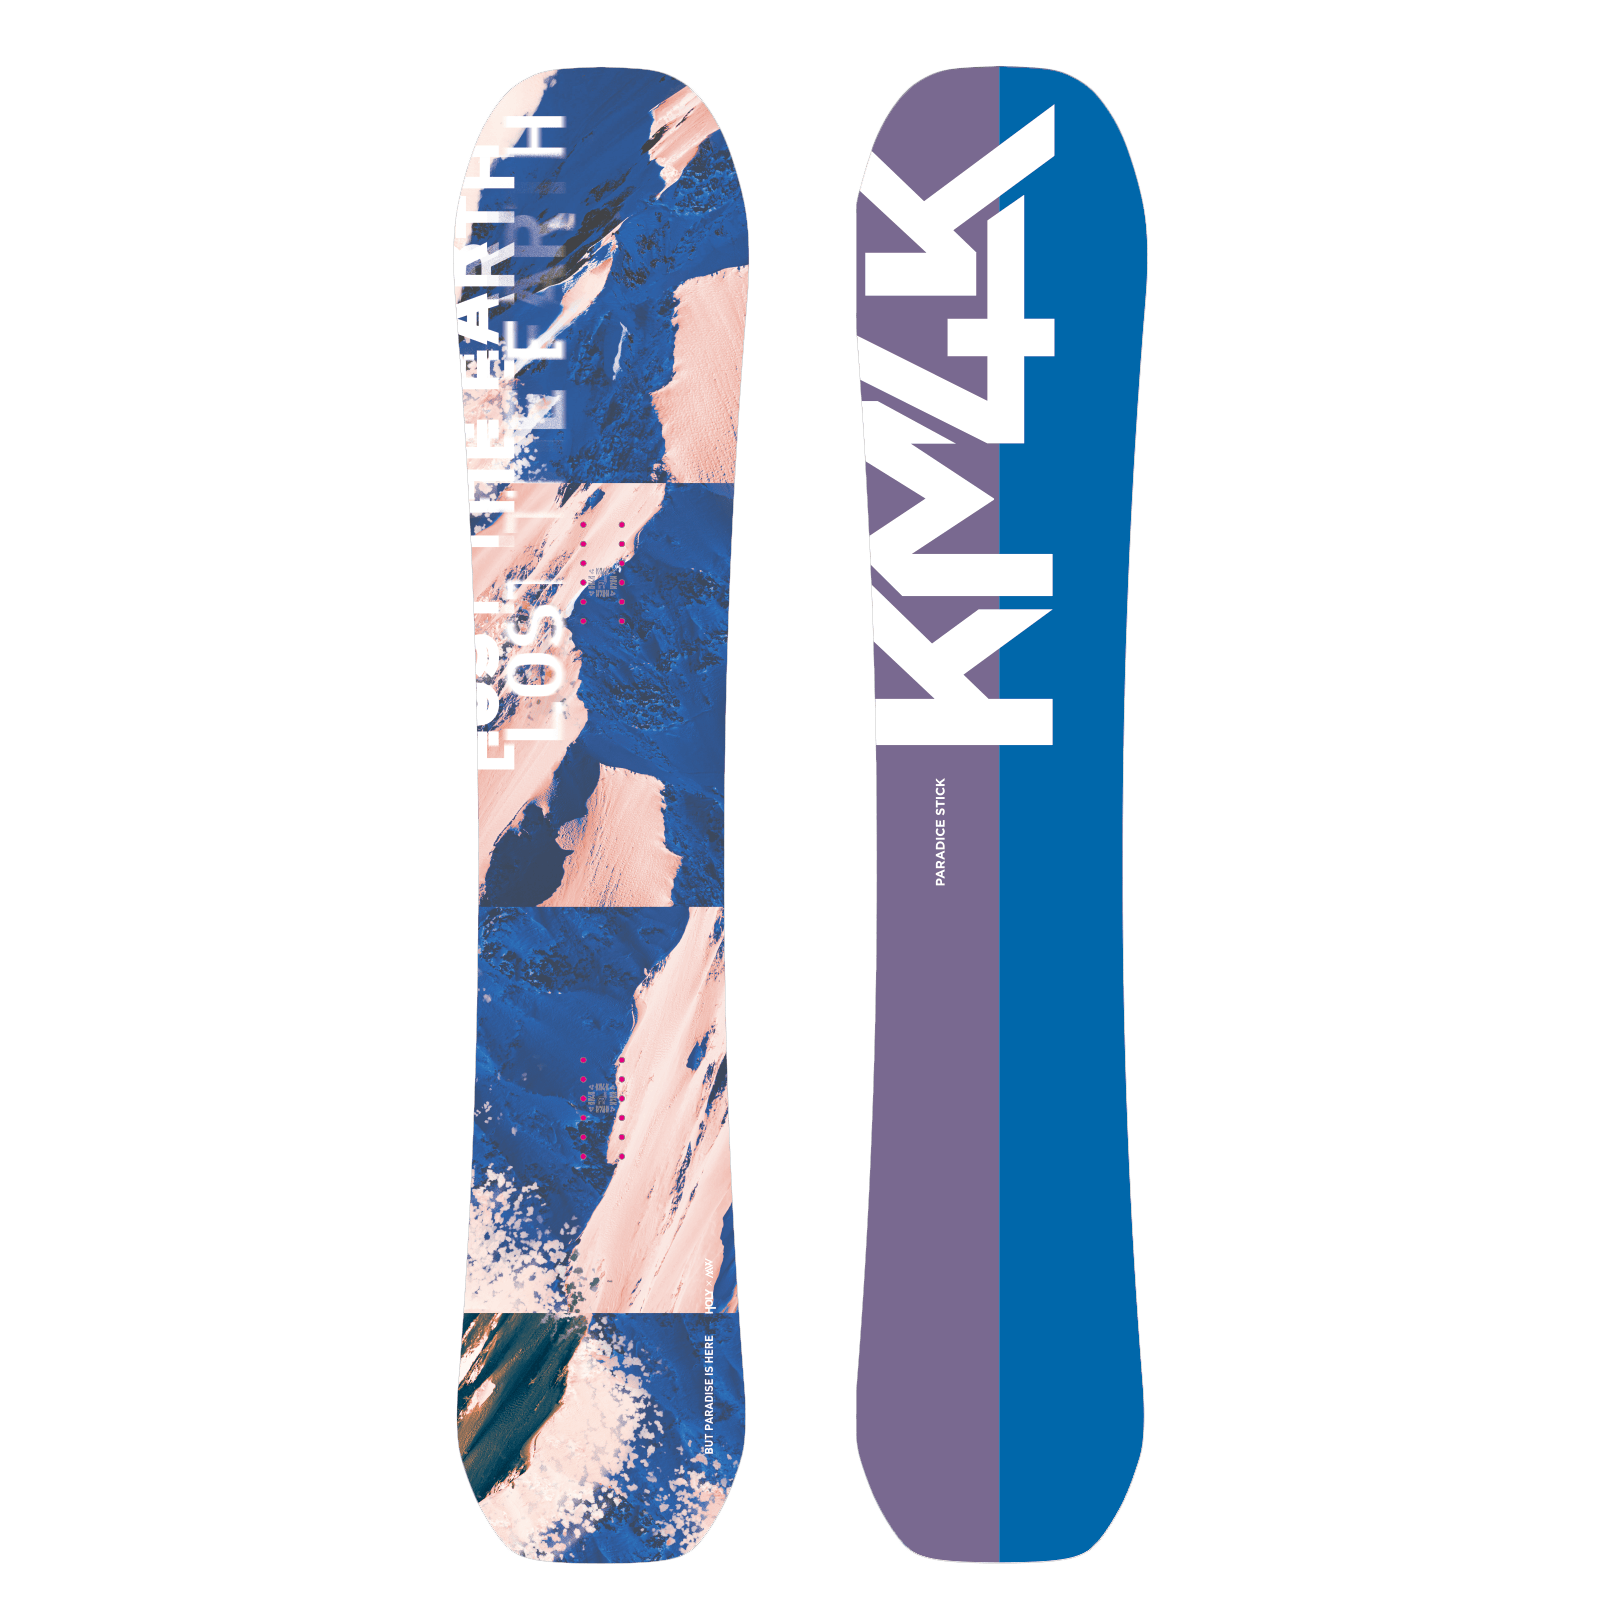 PARADICE STICK 4 – 23/24 KM4K SNOWBOARDS